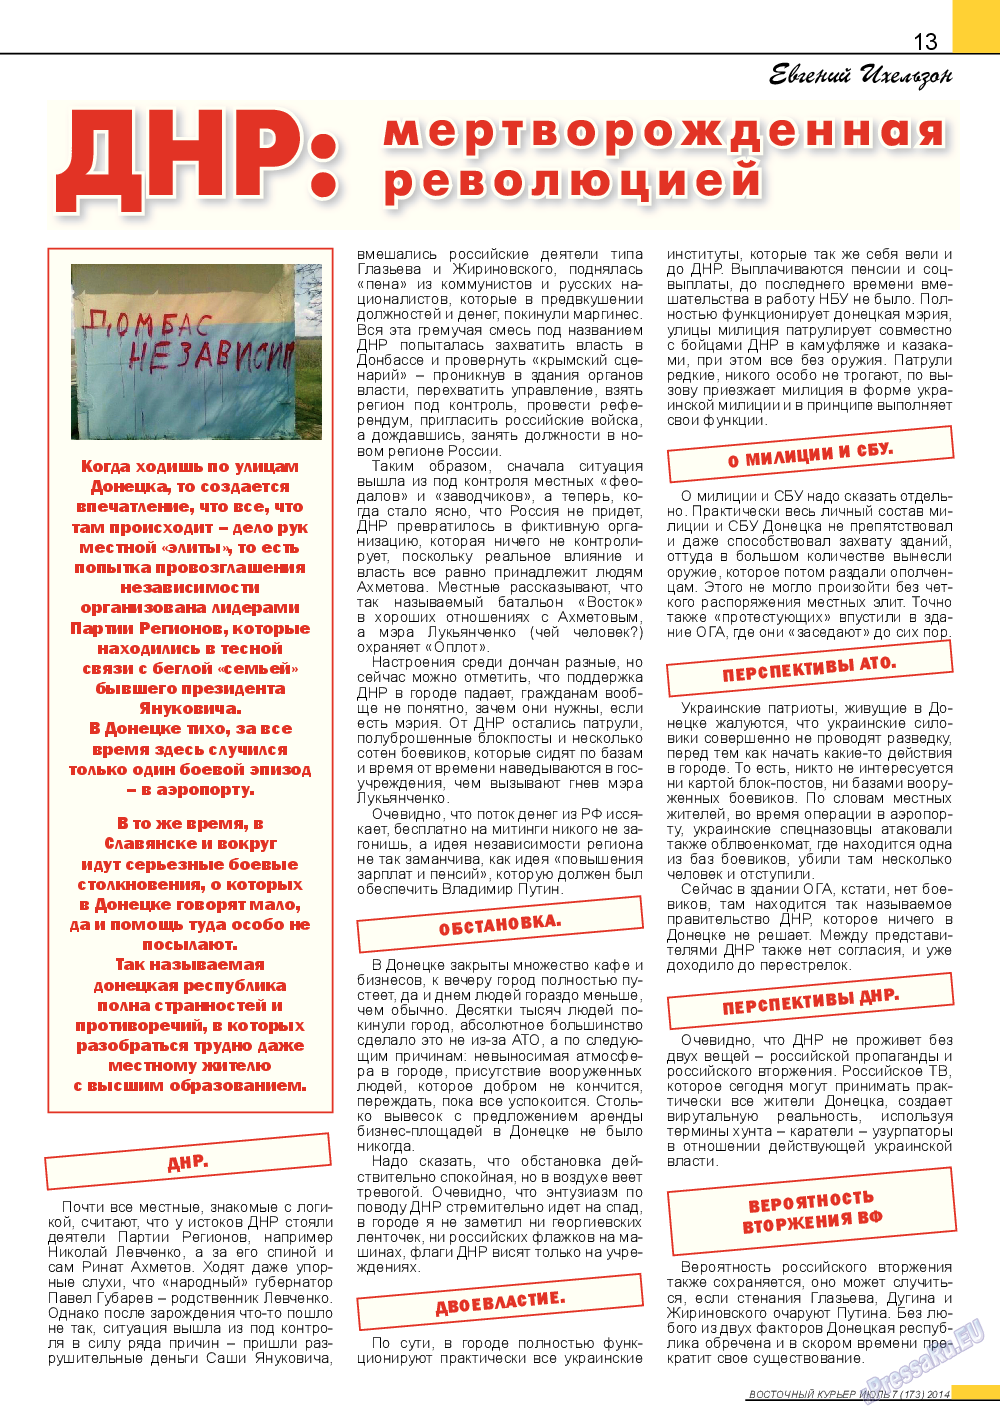 Восточный курьер (журнал). 2014 год, номер 7, стр. 13